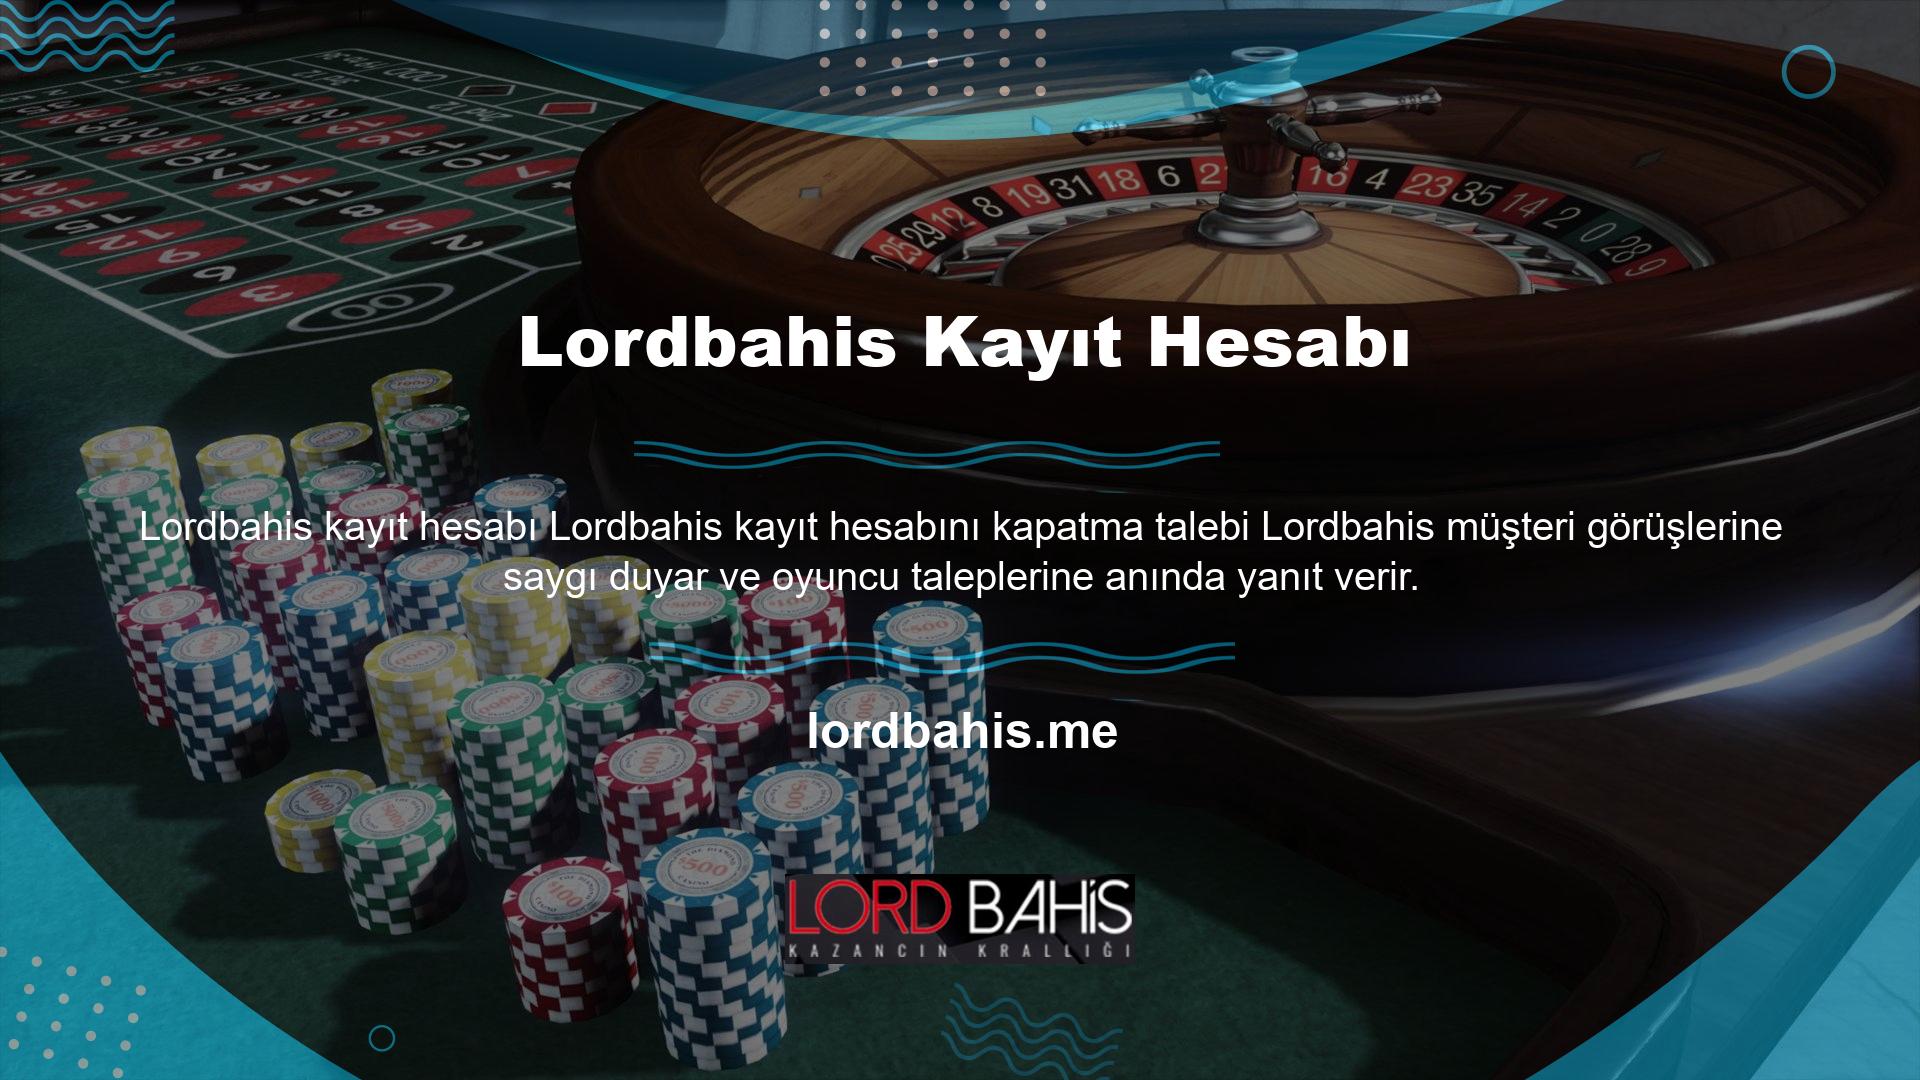 Bazı oyuncular Lordbahis programından çıkmak için hesap kapatma talebinde bulunabilirler